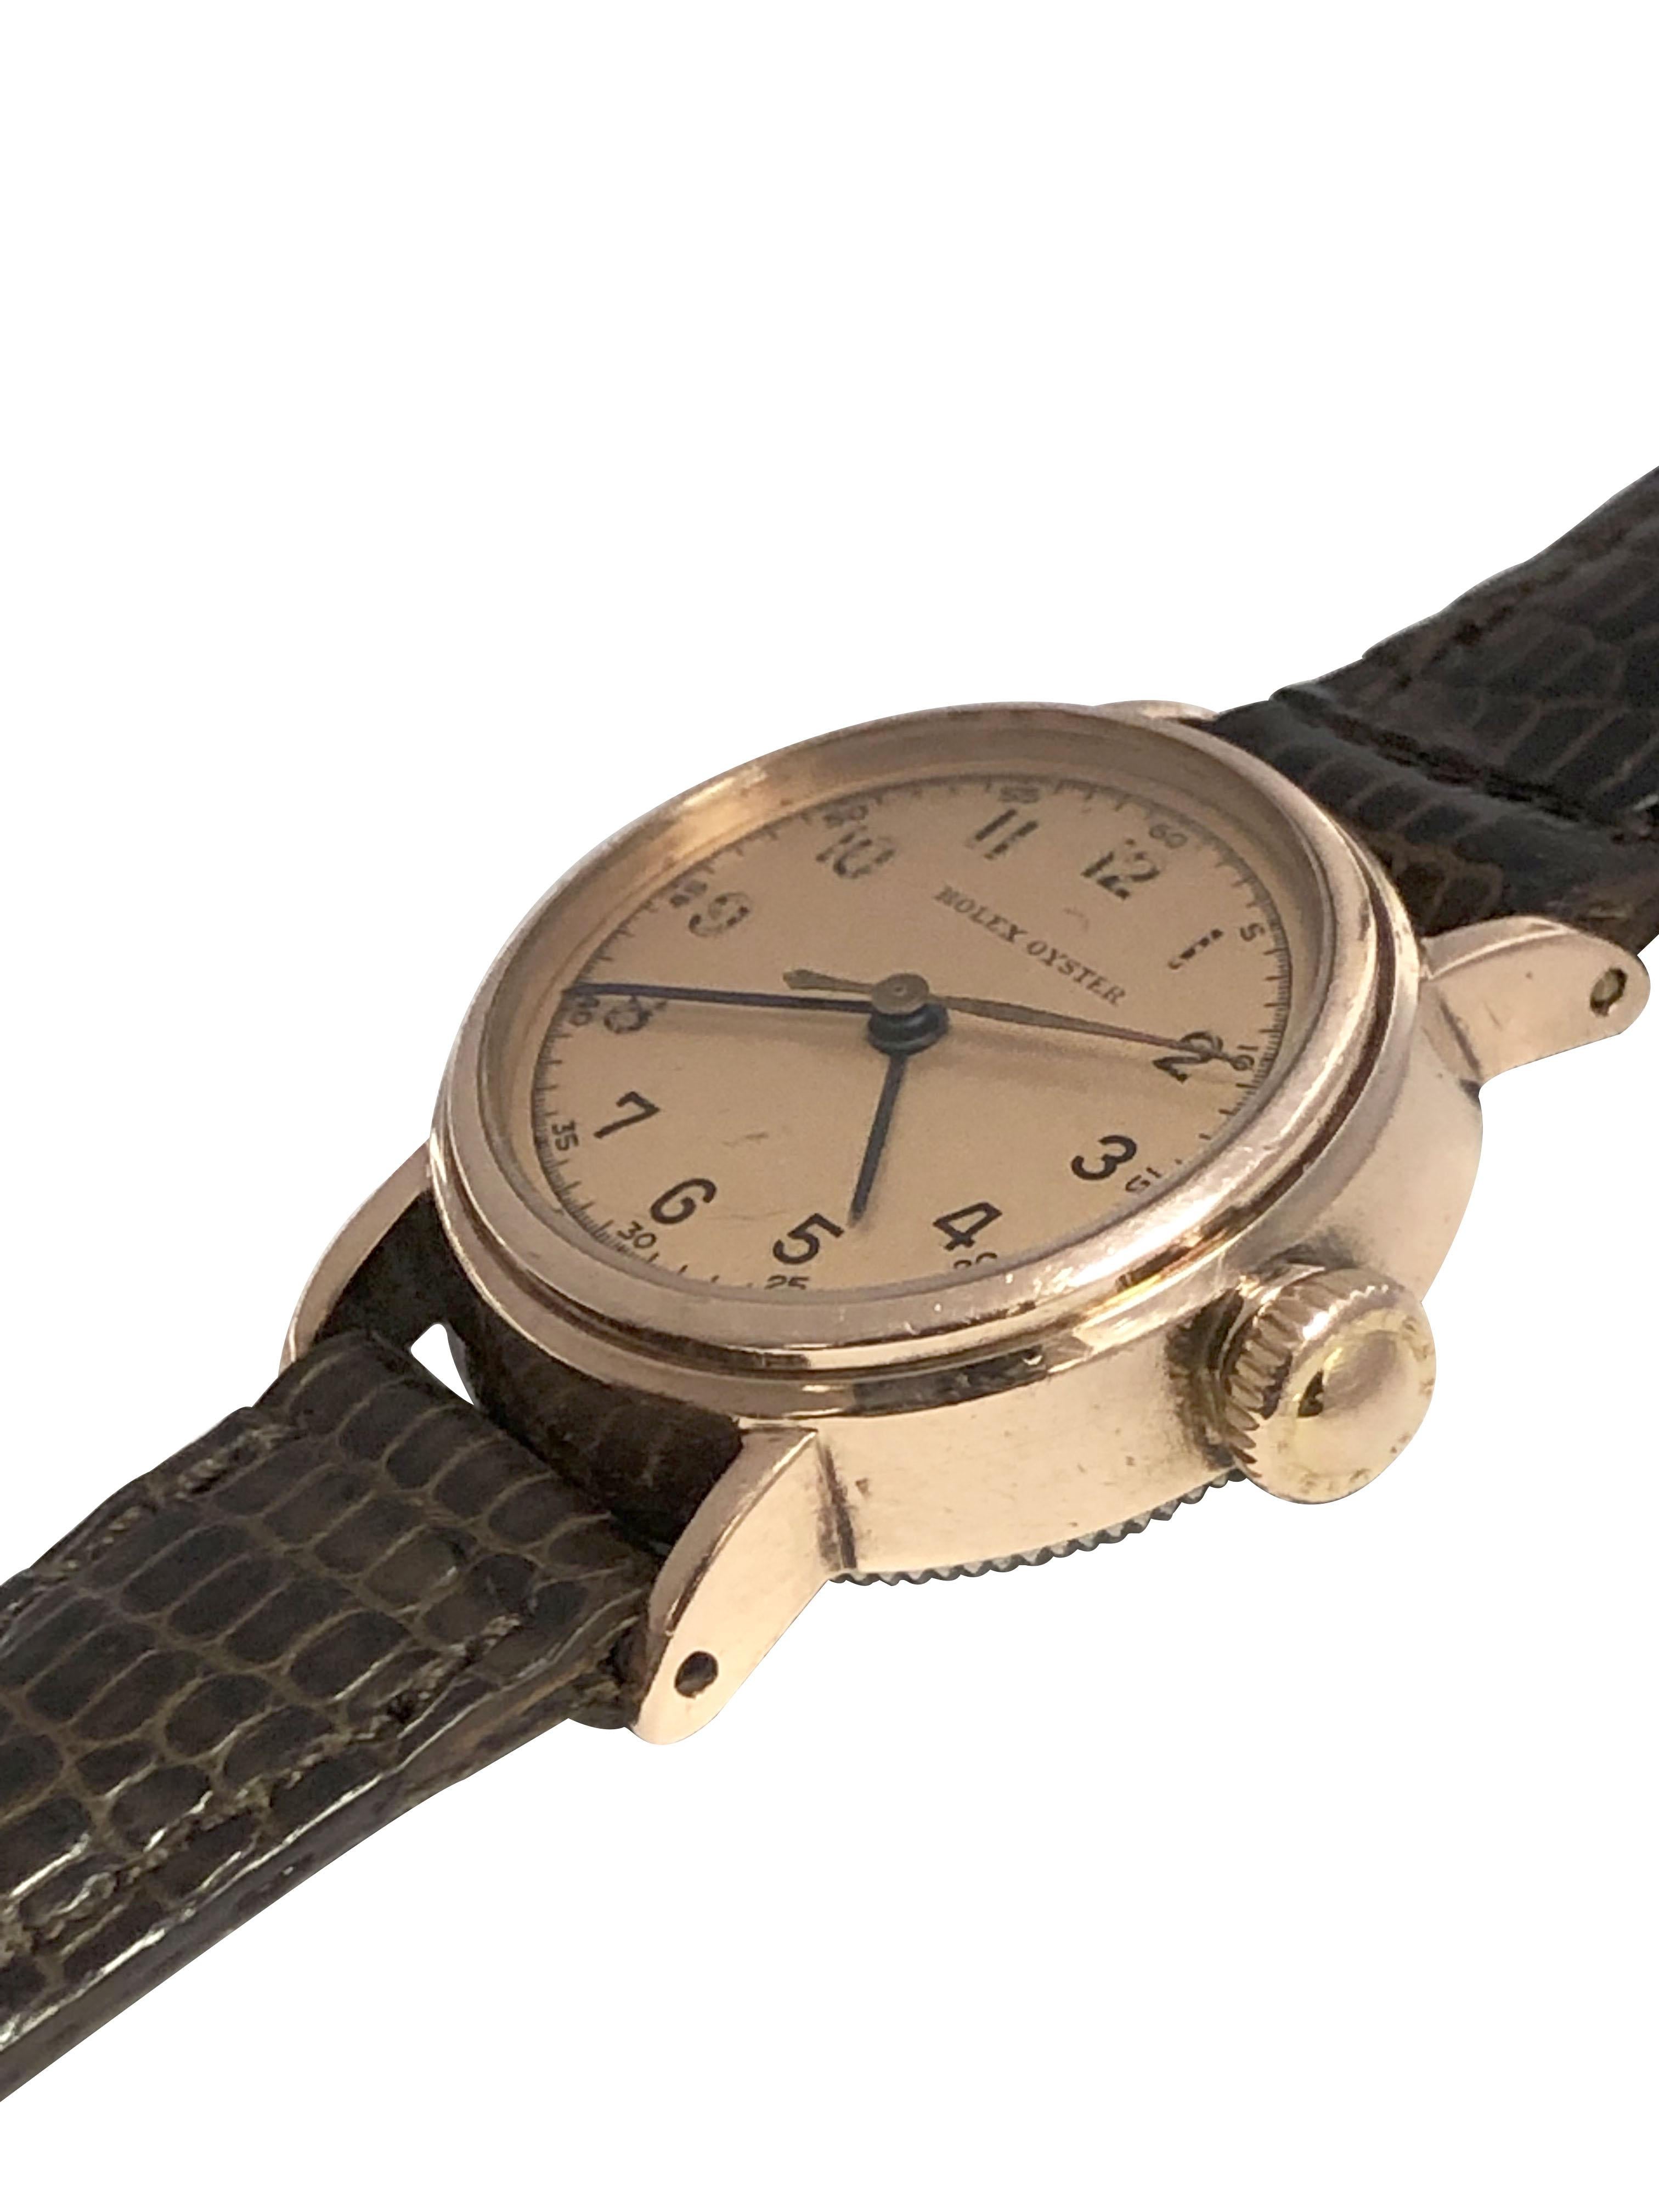 1930s rolex watches